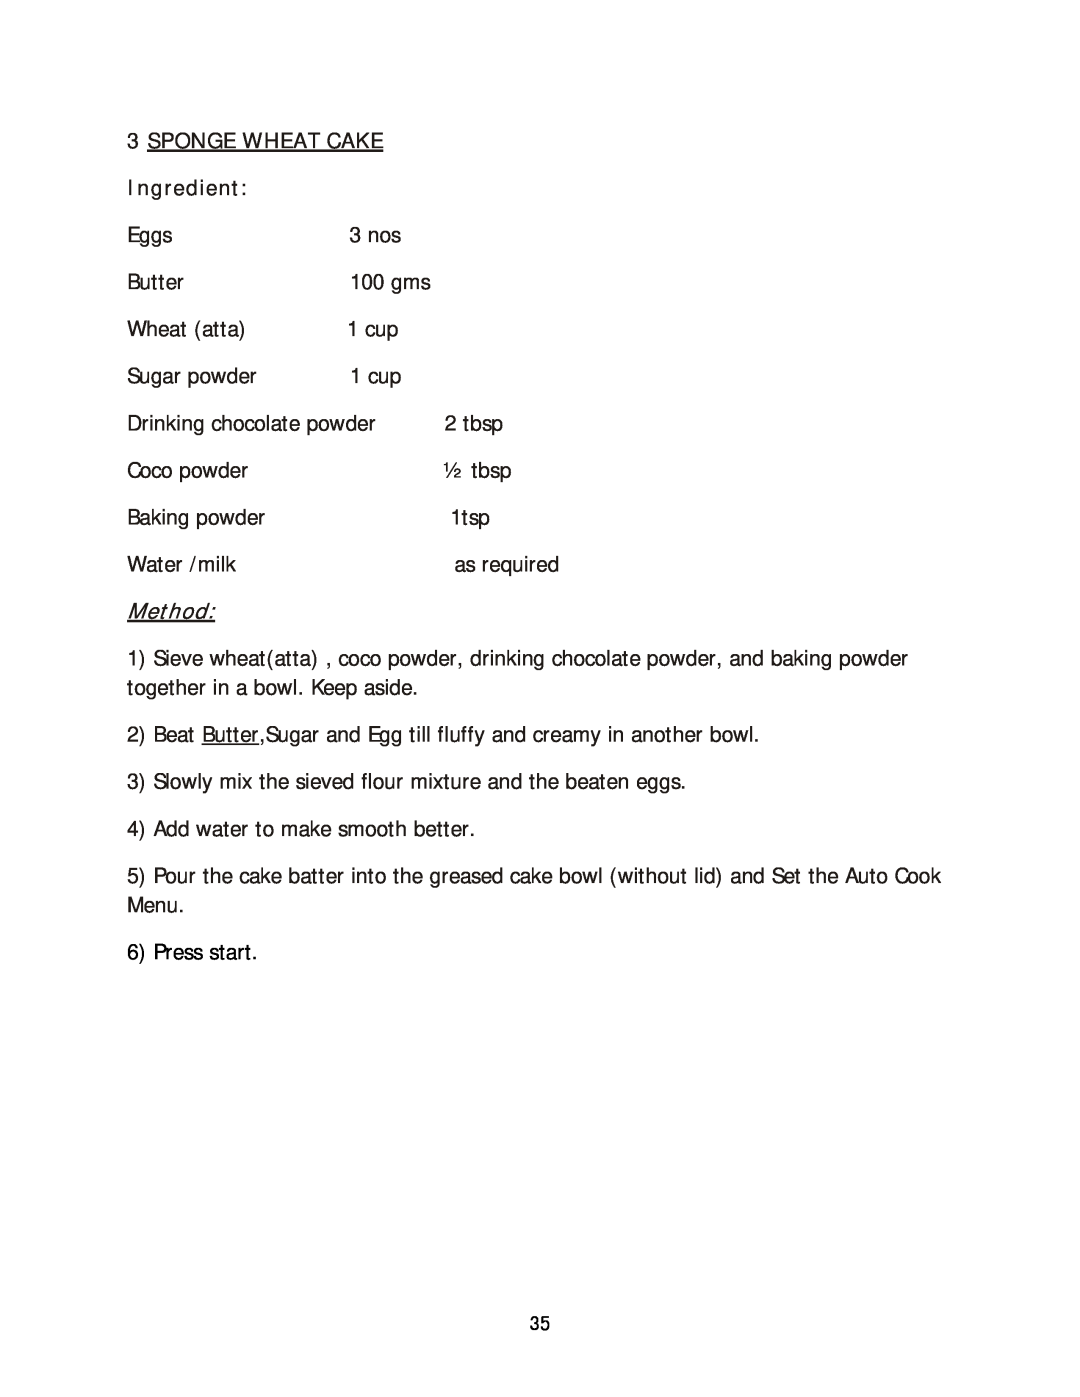 Haier HIL 2810EGCB manual Sponge Wheat Cake, Ingredient, Method, Press start 